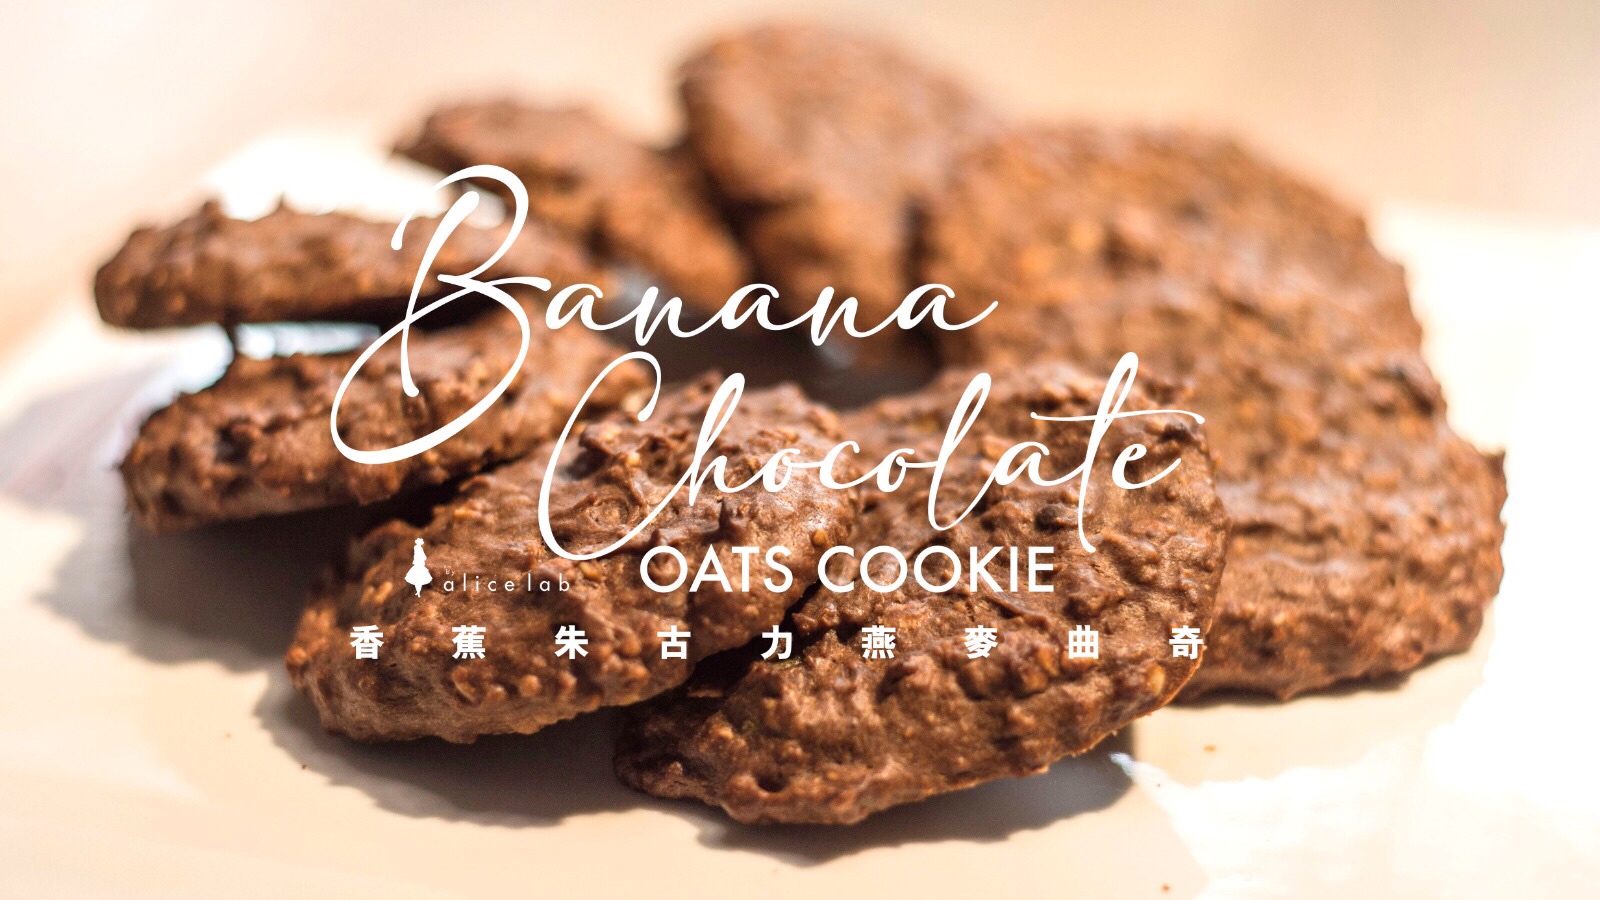 香蕉朱古力燕麥軟曲奇 [低糖簡易食譜] 
Banana Chocolate Oats Soft Cookie